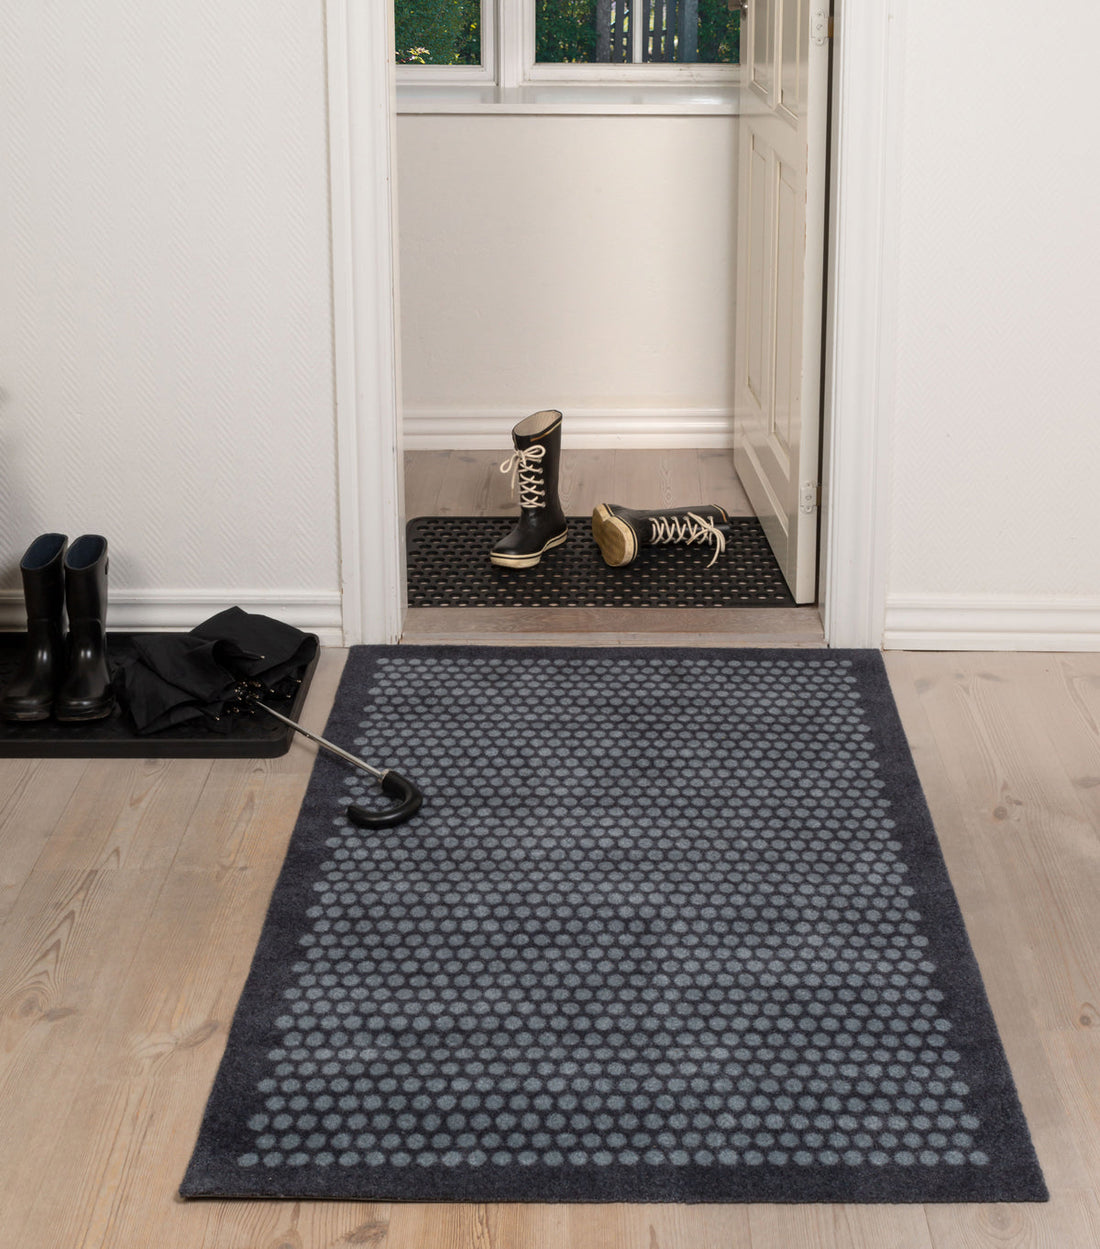 Floor mat 90 x 130 cm - dot/gray